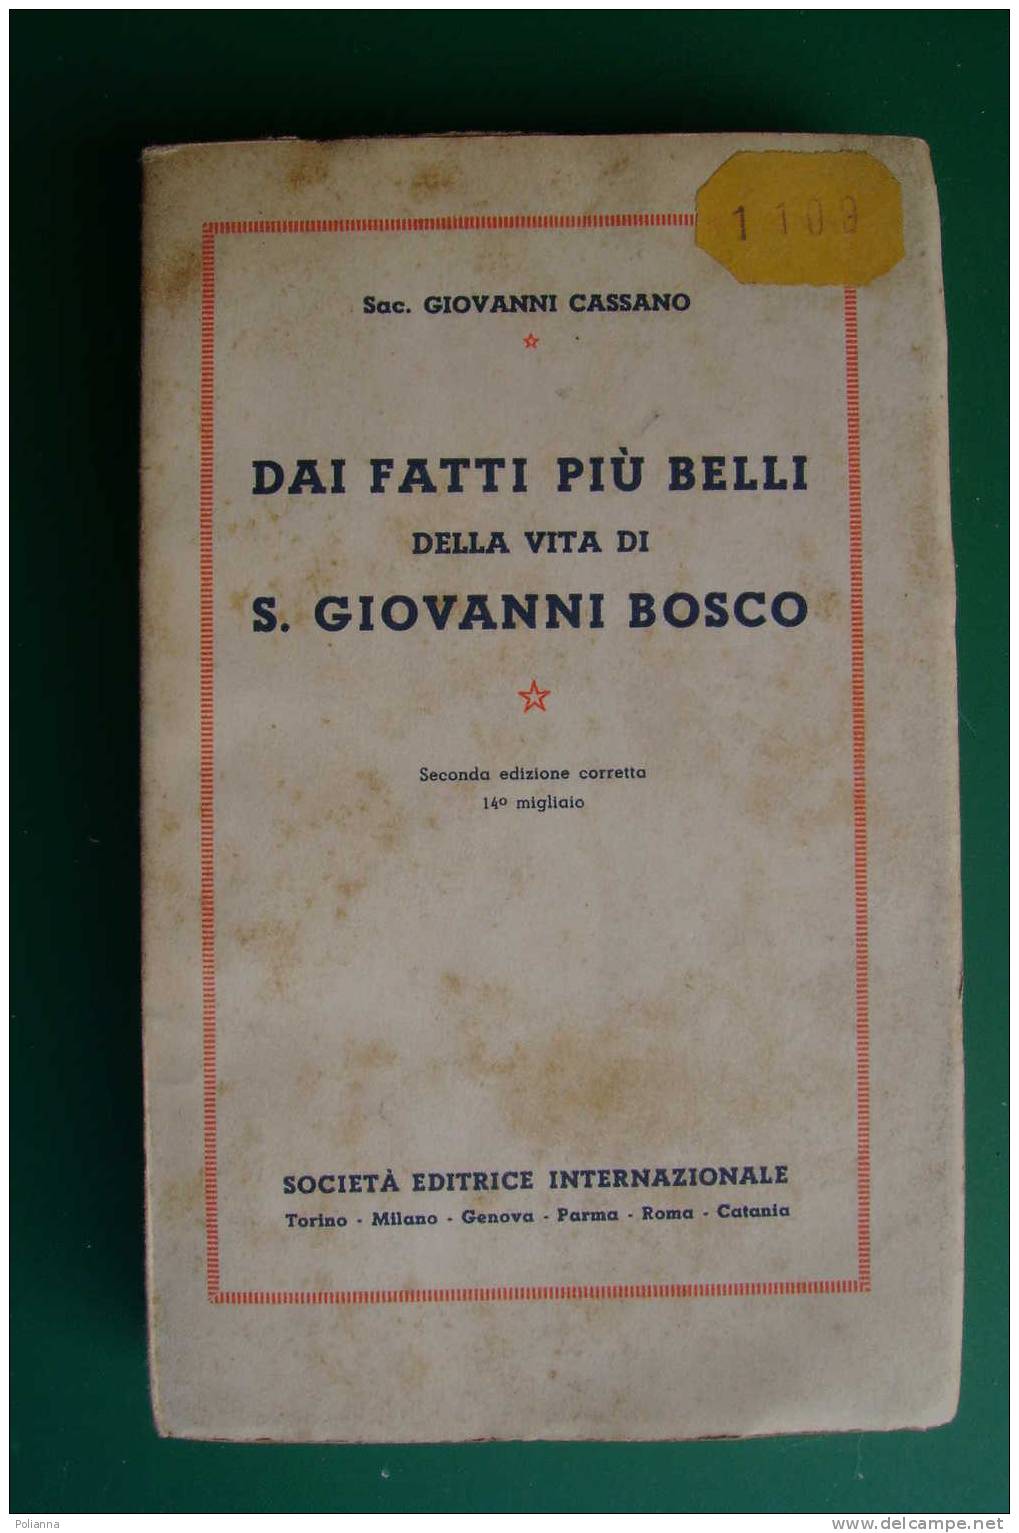 PDD/29 Sac. Giovanni Cassano DAI FATTI PIU' BELLI Della Vita Di S.GIOVANNI BOSCO S.E.I. 1934 - Godsdienst